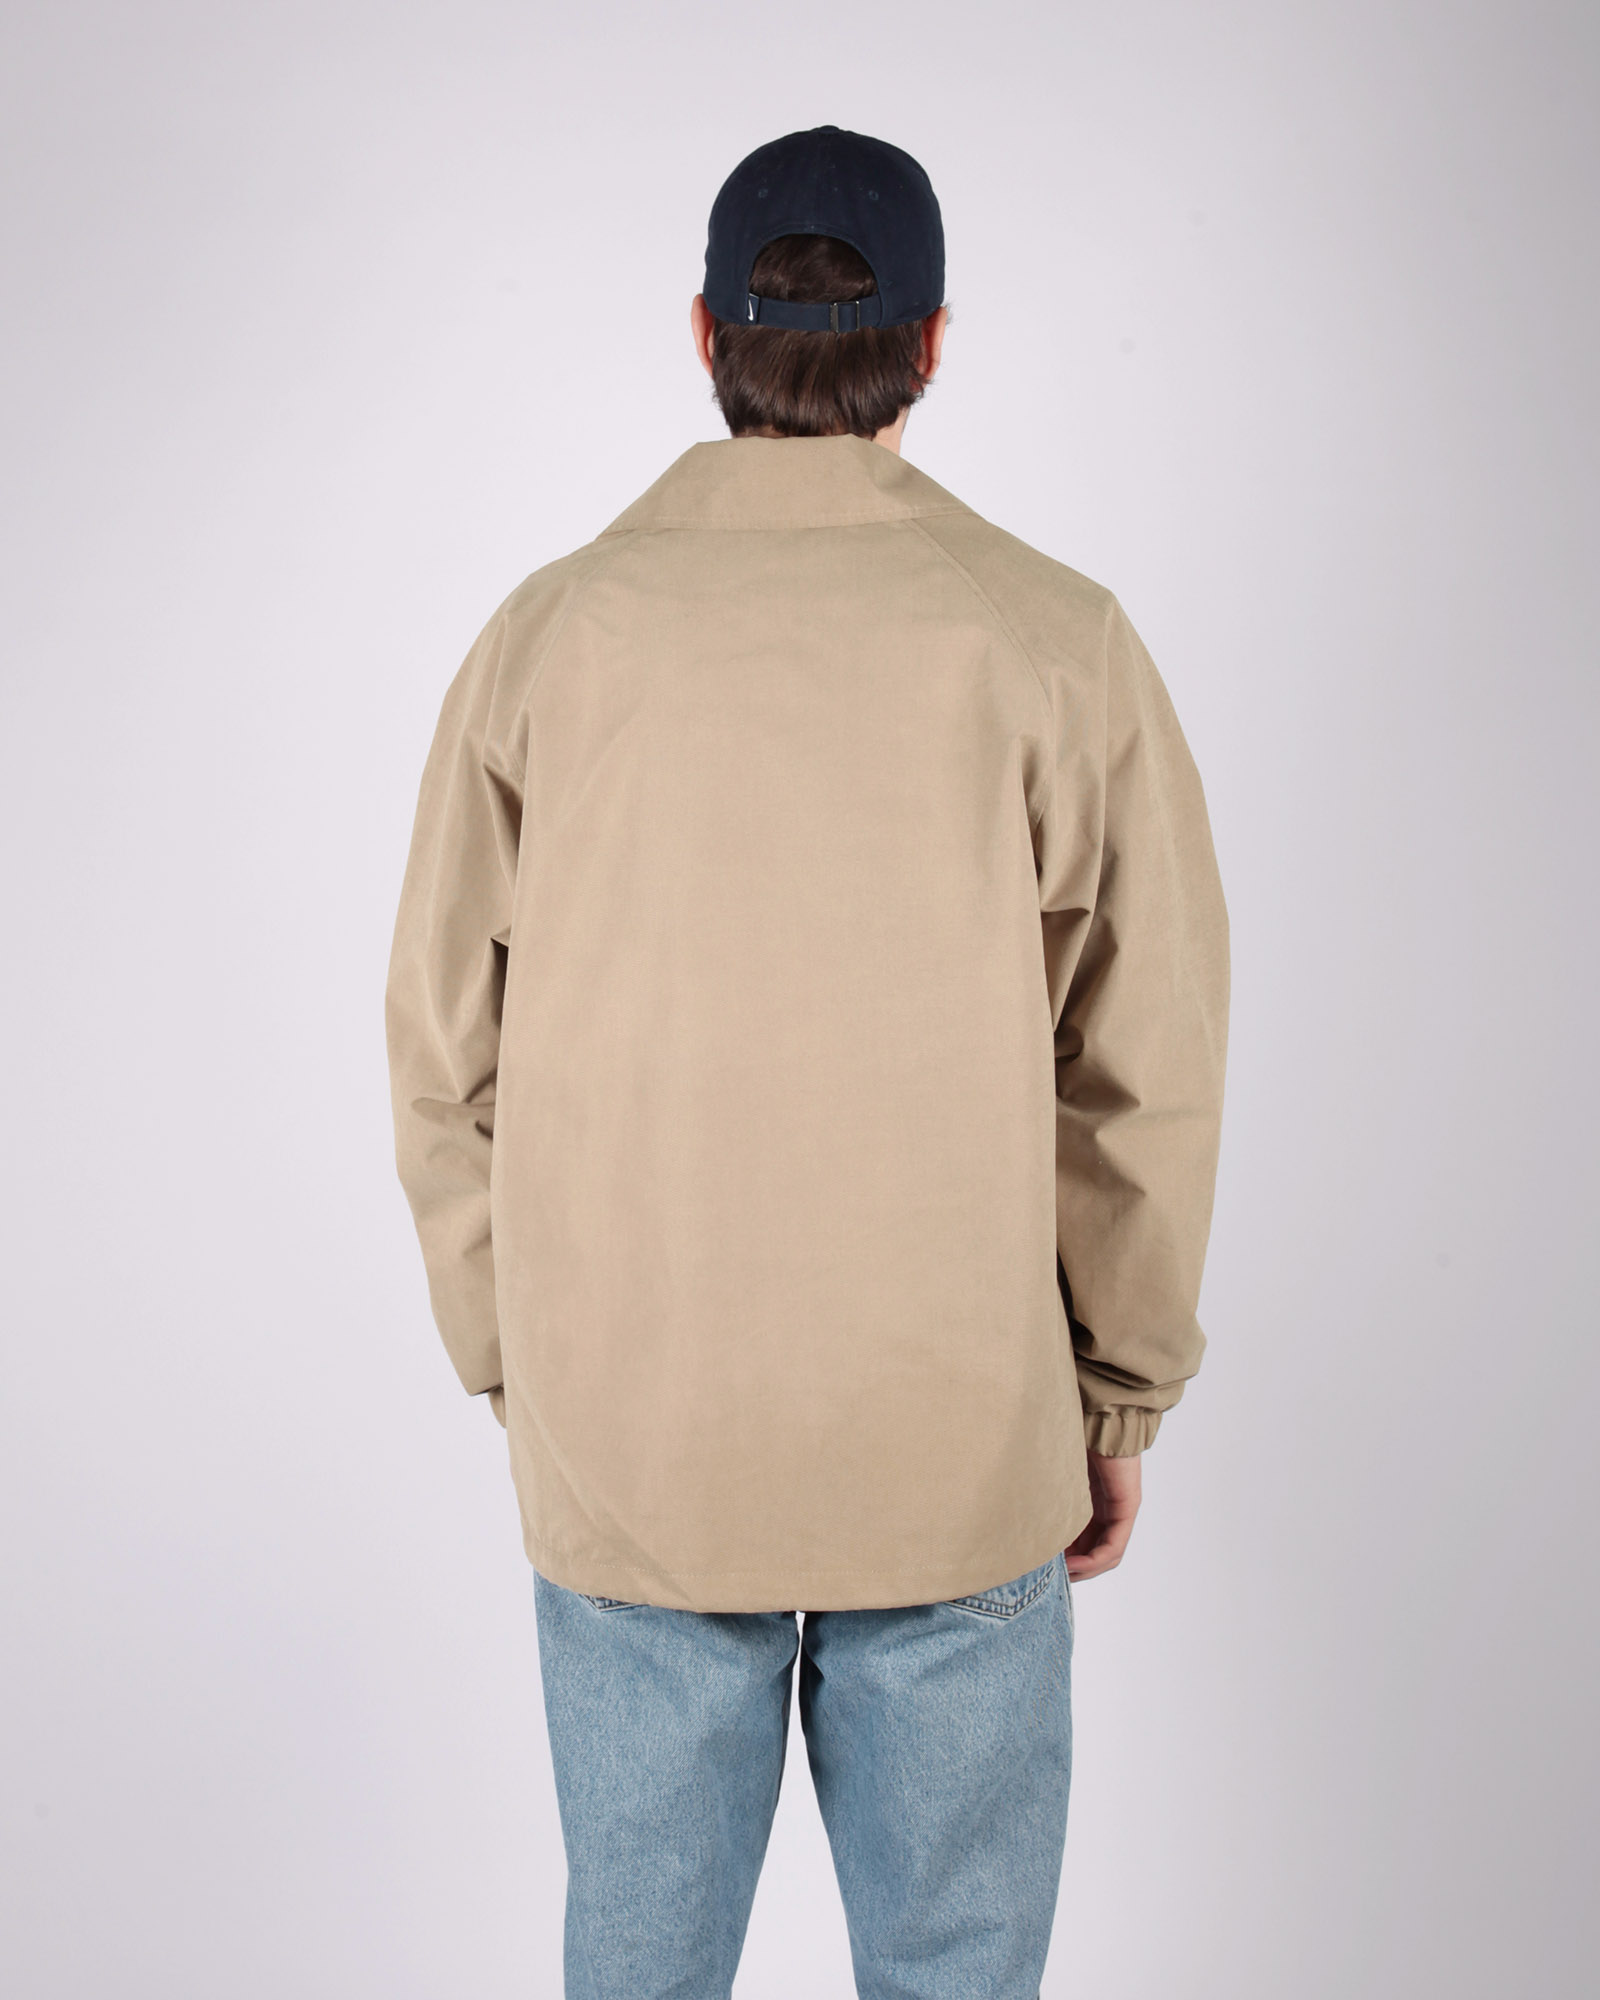 Куртка Anteater Coach Jacket - фото 3